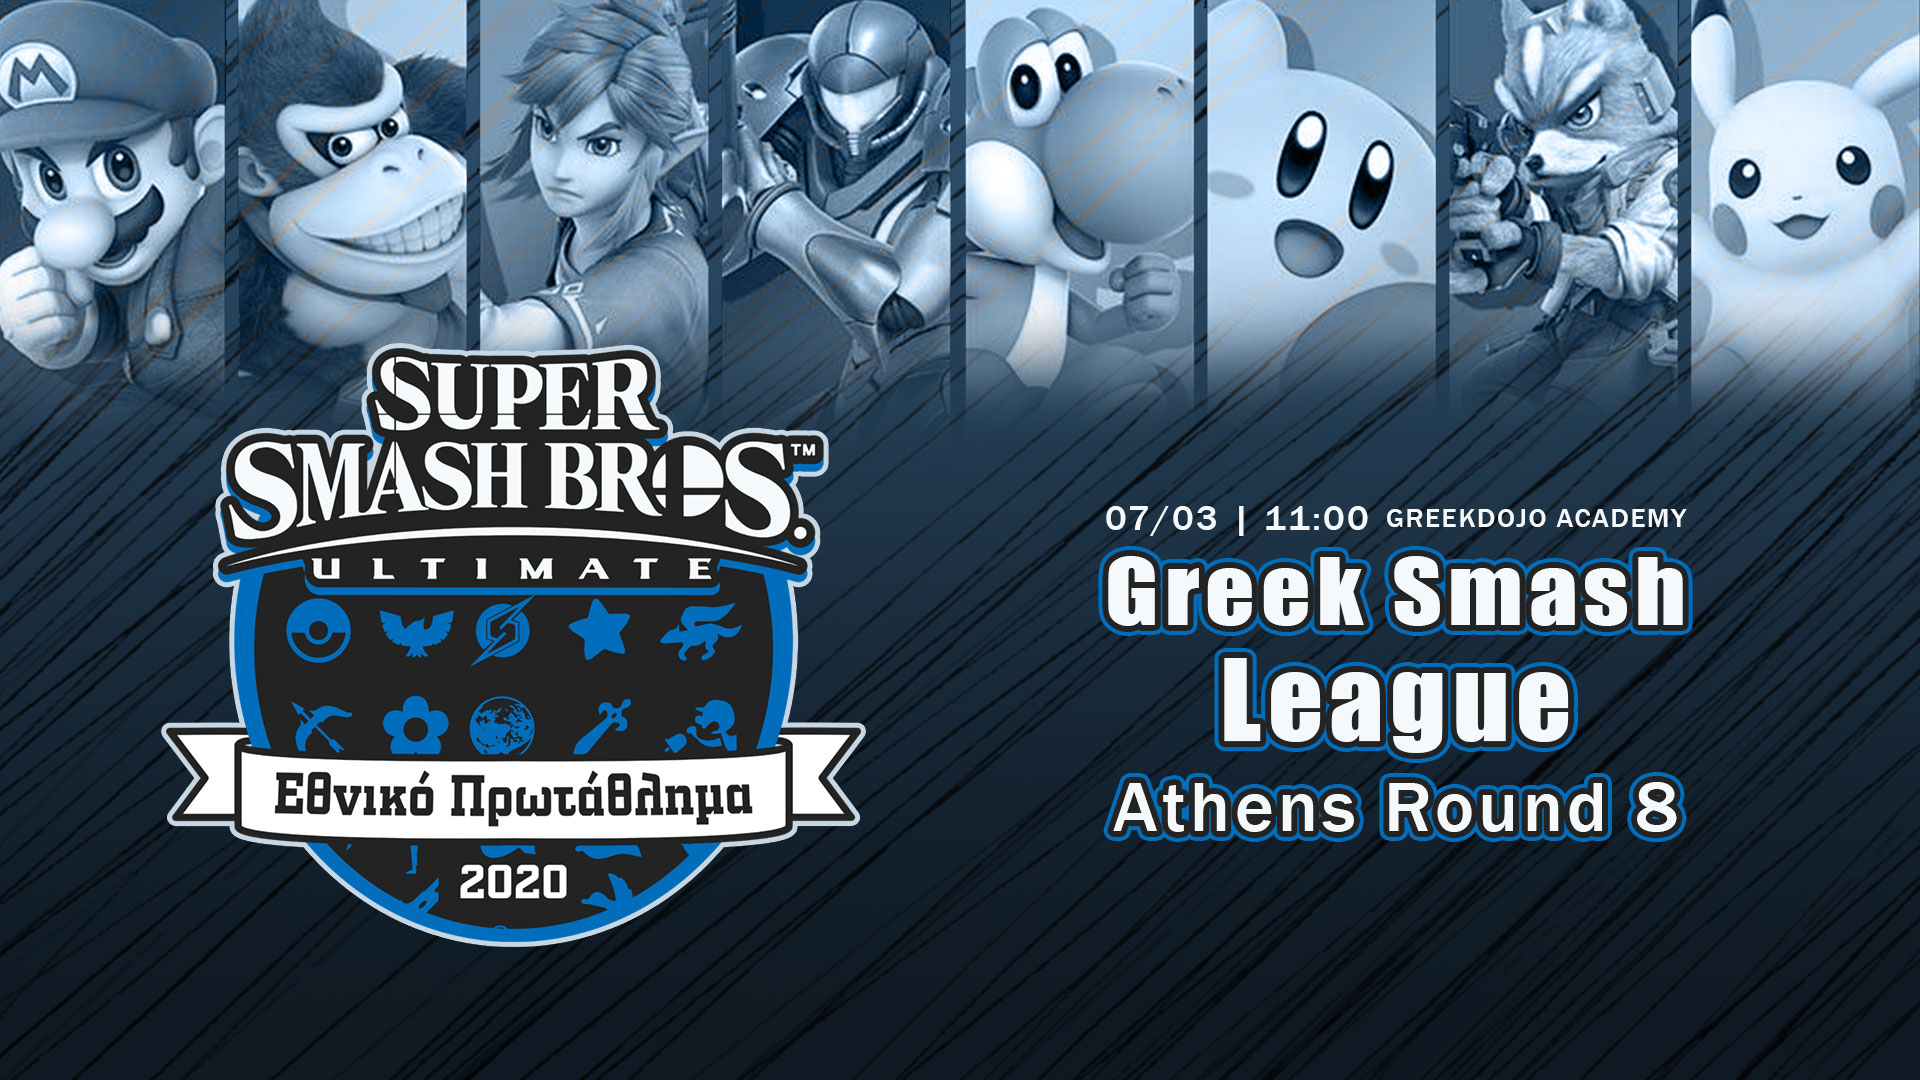 Greek Smash League 2020 Round 8 Athens